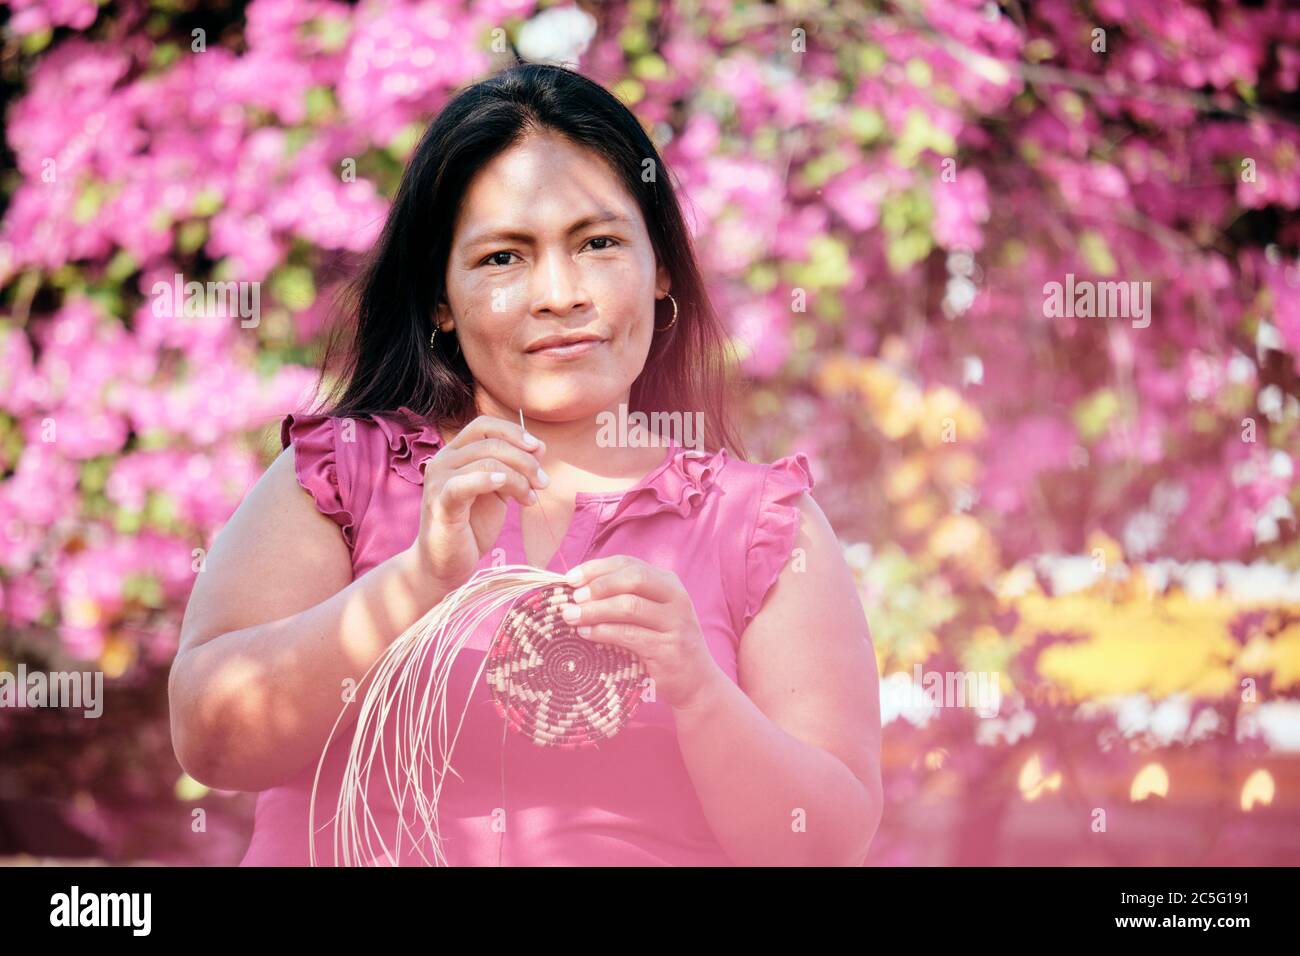 Indigene Frau Weaving Untersetzer Für Touristen In Panama Stockfoto